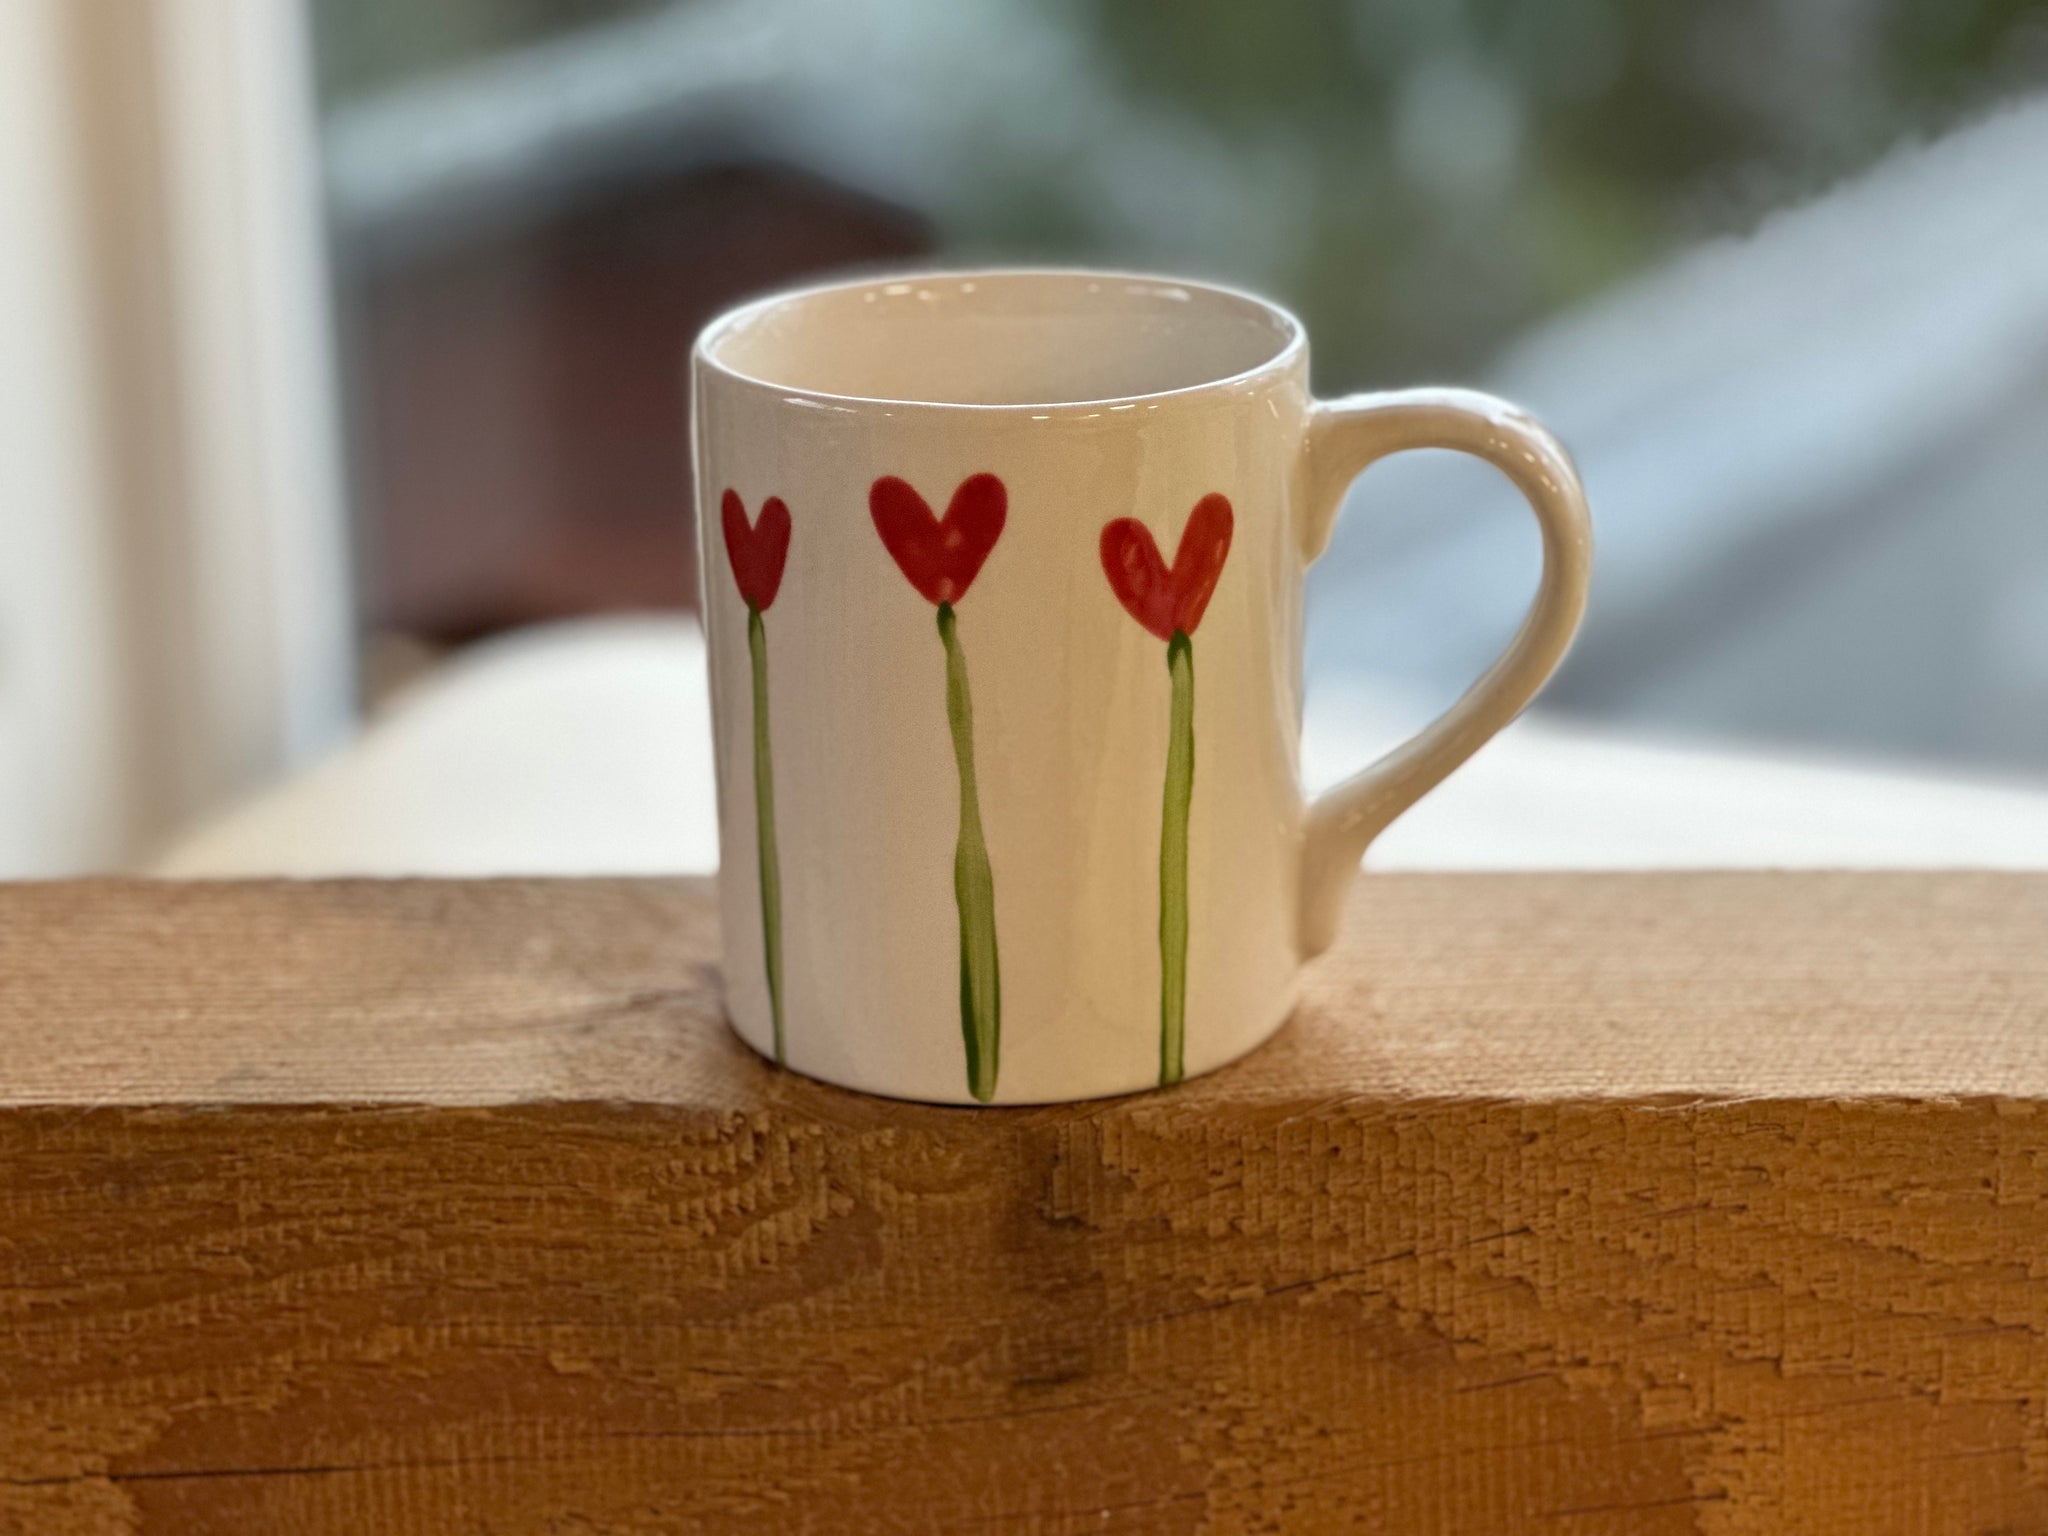 Heart flowers mug